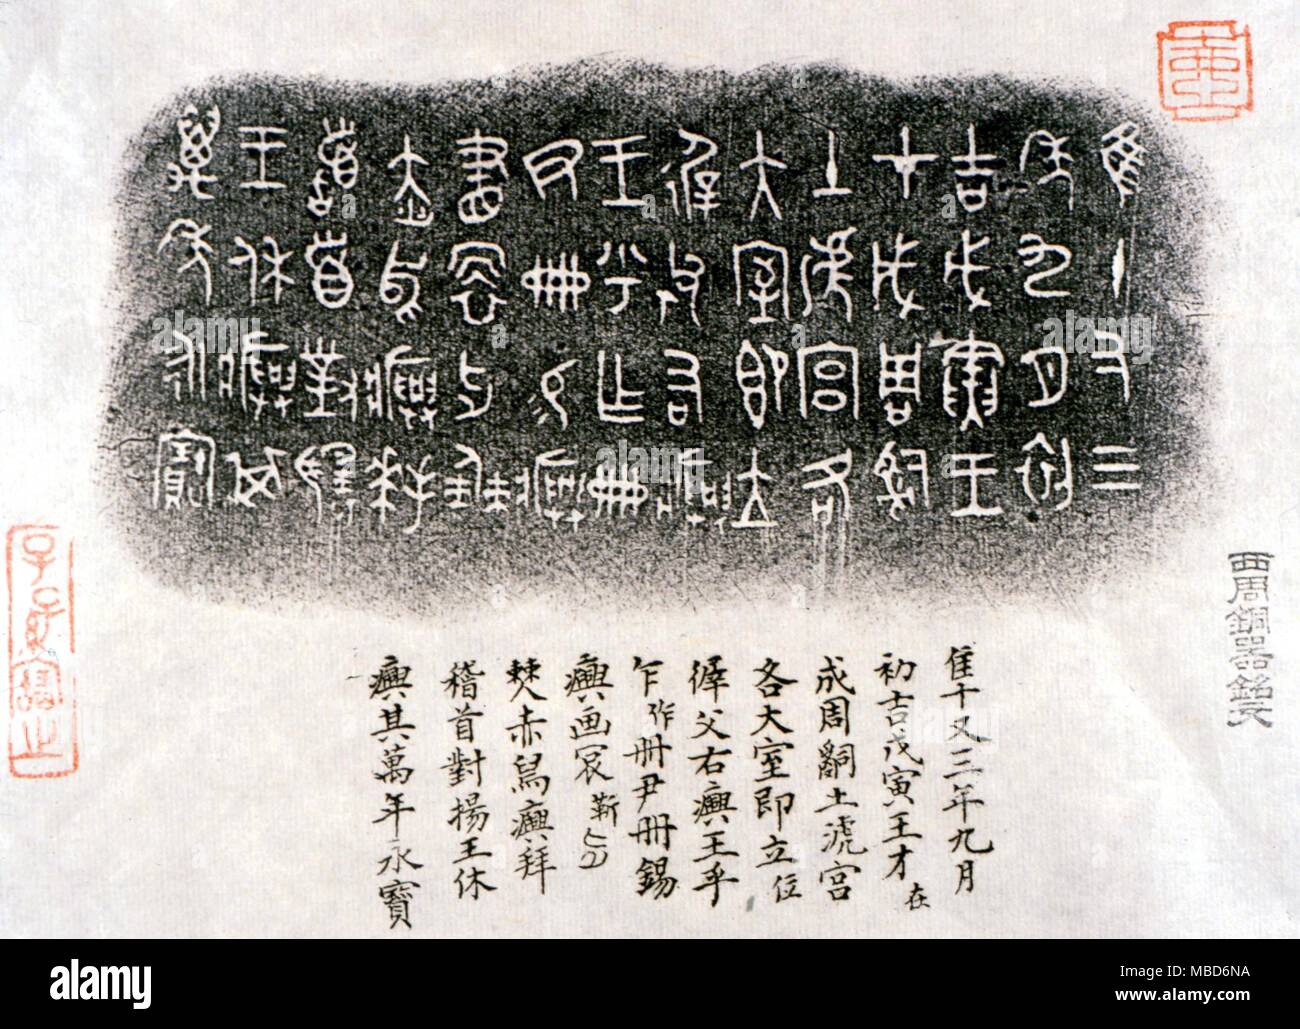 ALPHABETS - EARLY CHINESE - Pictogrammes cut sur l'intérieur du rituel des bols, et ici imprimé par frottage. Ces pictogrammes ont donné lieu progressivement à l'écrit calligraphiques caractères. Probablement de la période Han. Banque D'Images